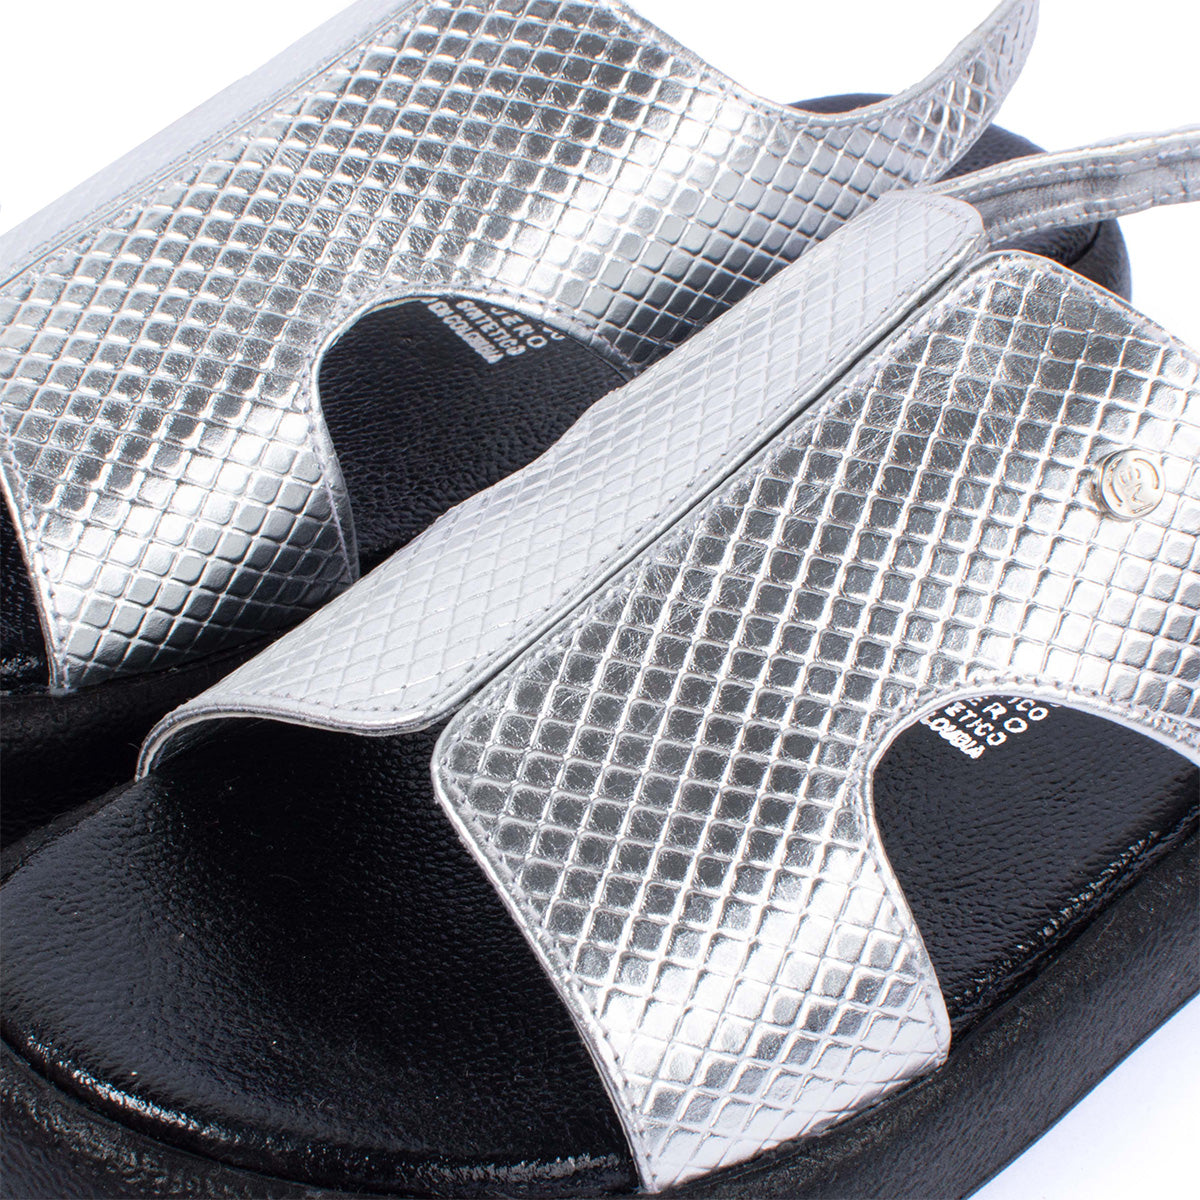 Sandalias planas en cuero color plata con textura tipo croco 104074